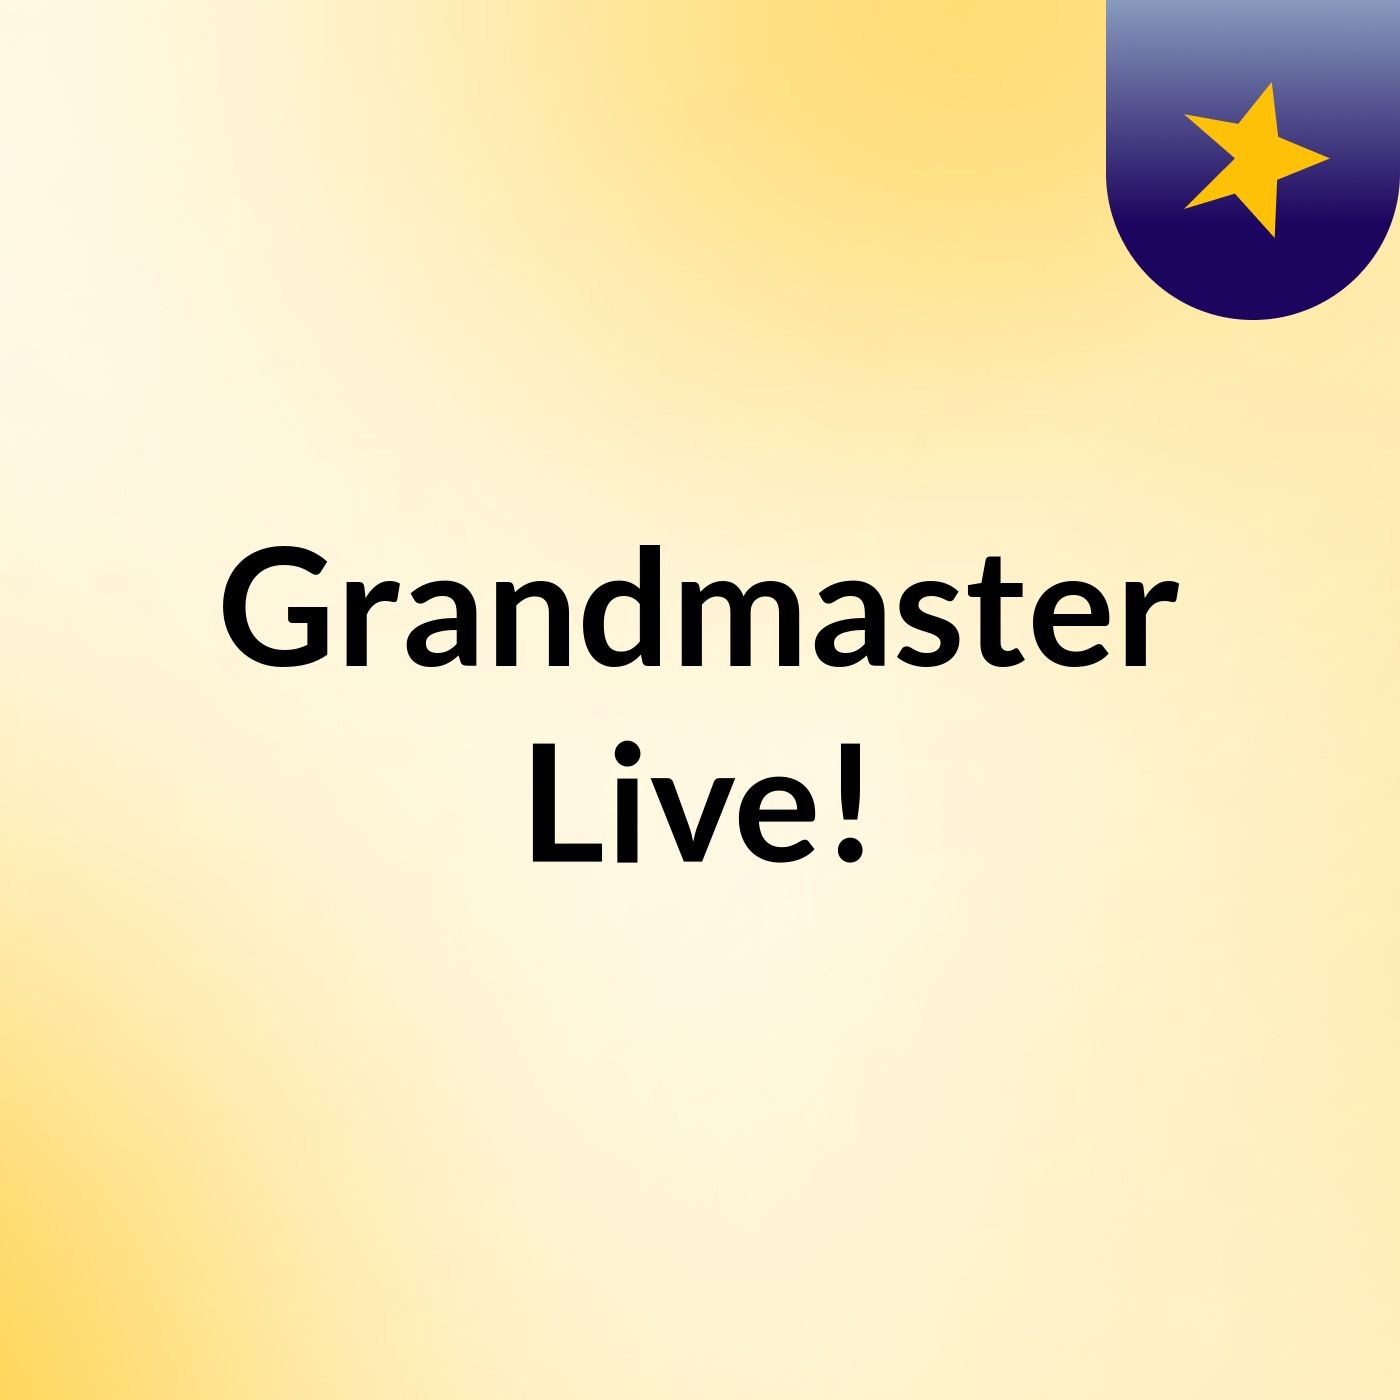 Grandmaster Live!